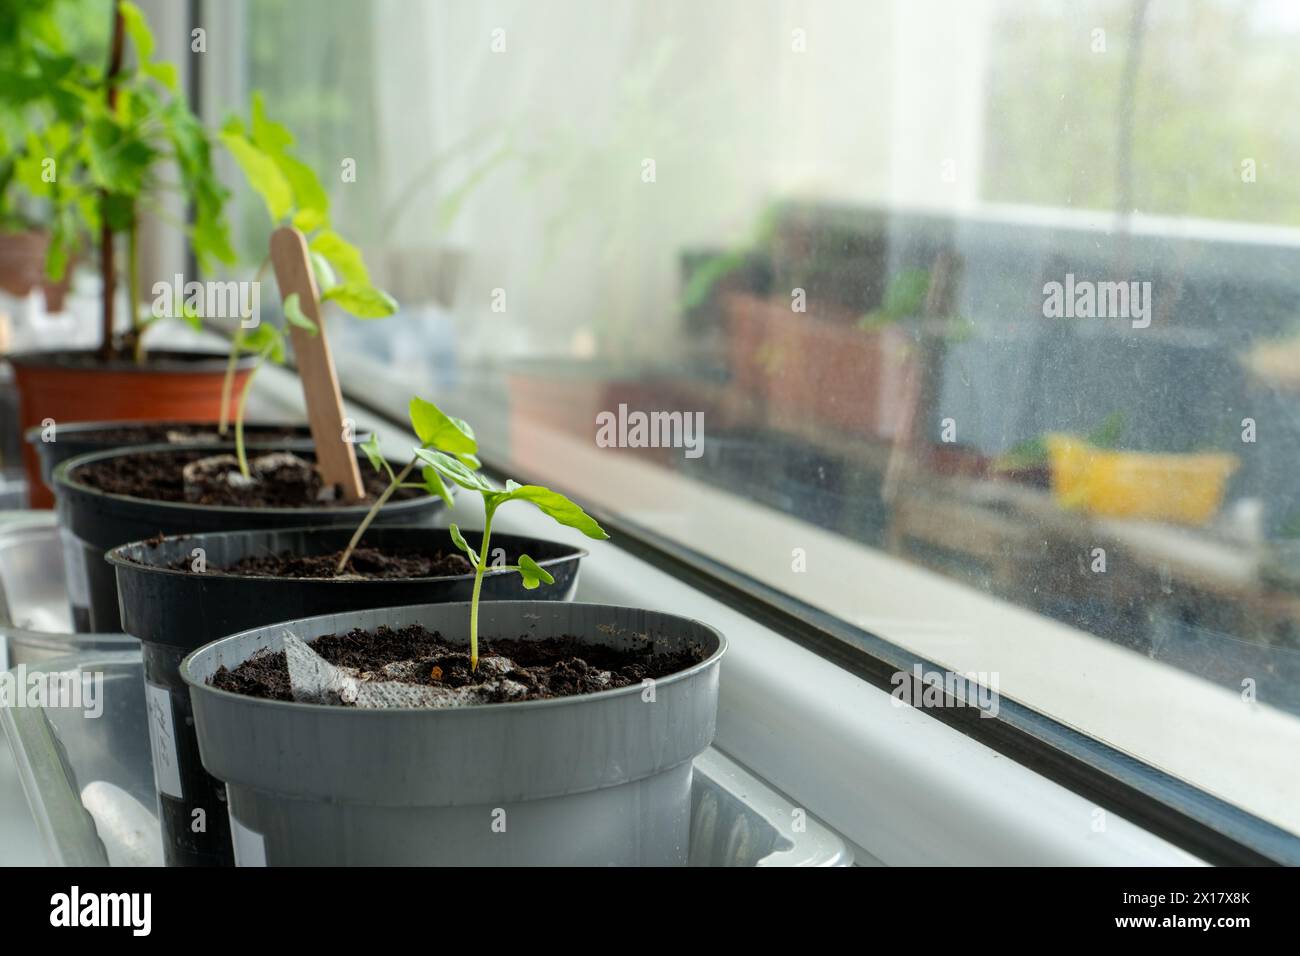 Keimung von Indoor-Pflanzensprossen. Junge Pflanzensetzlinge wachsen auf einer Fensterbank - die Probe, wie man Zimmerpflanzen in einer Wohnung züchtet. Stockfoto